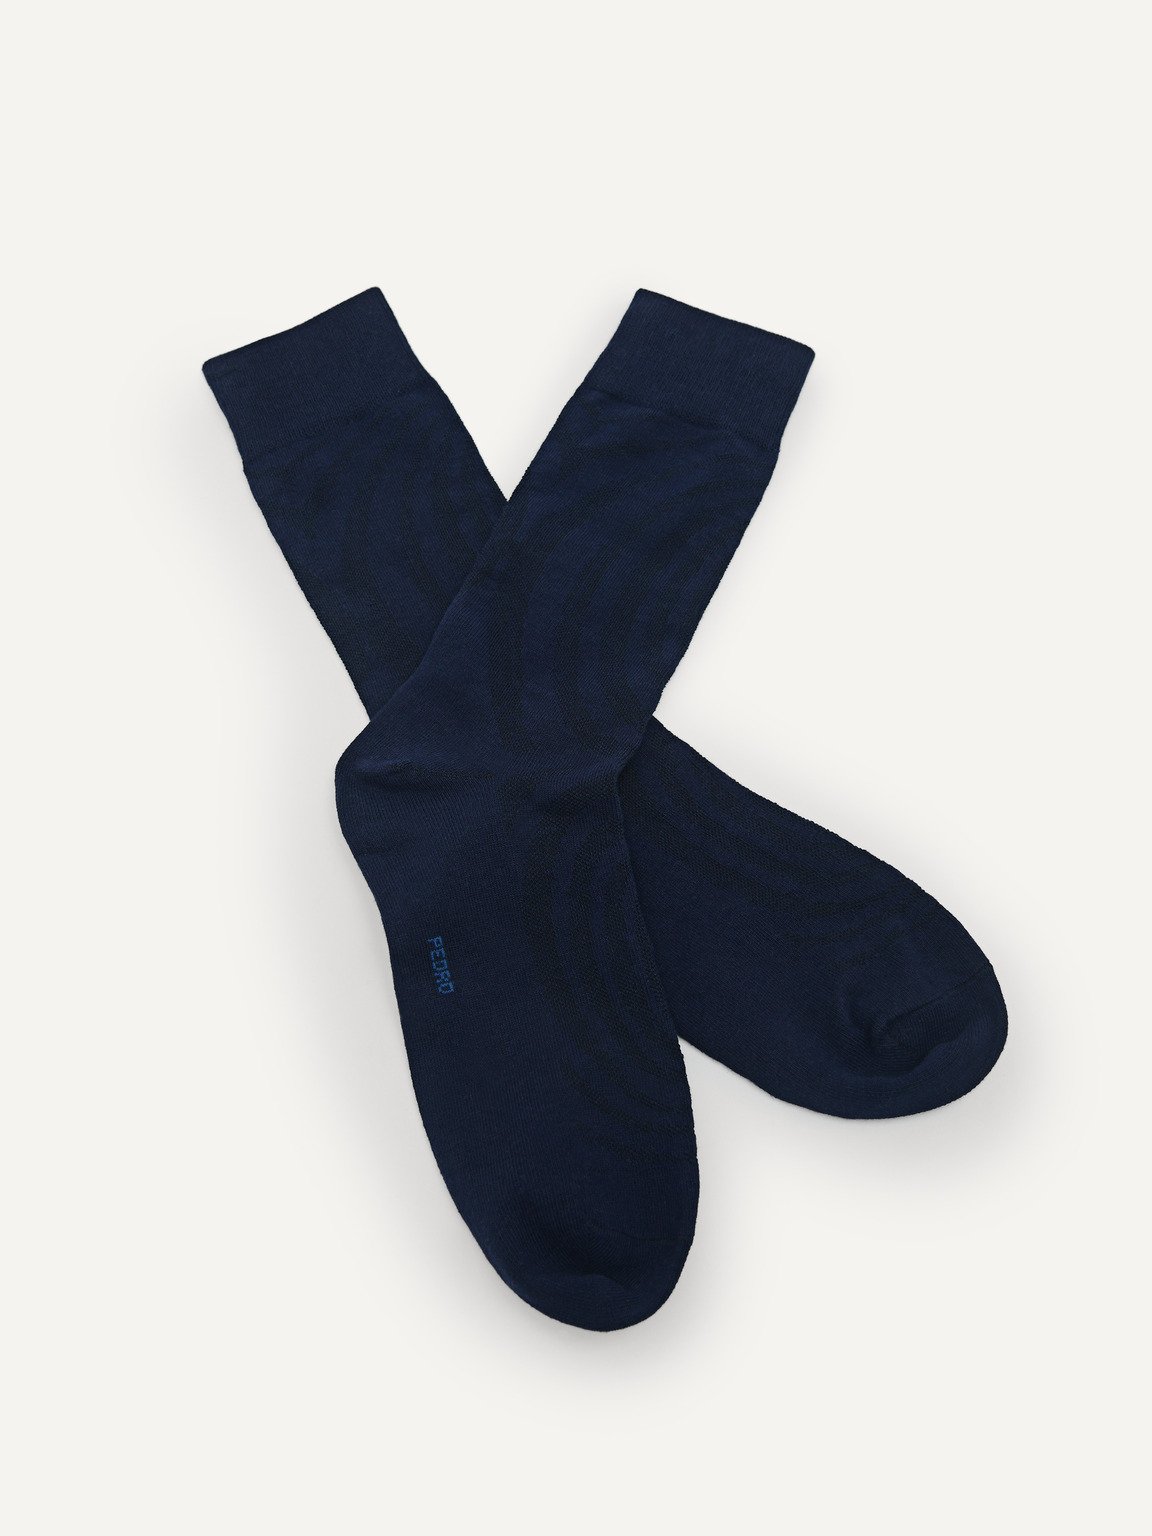 男士棉襪, 海军蓝色